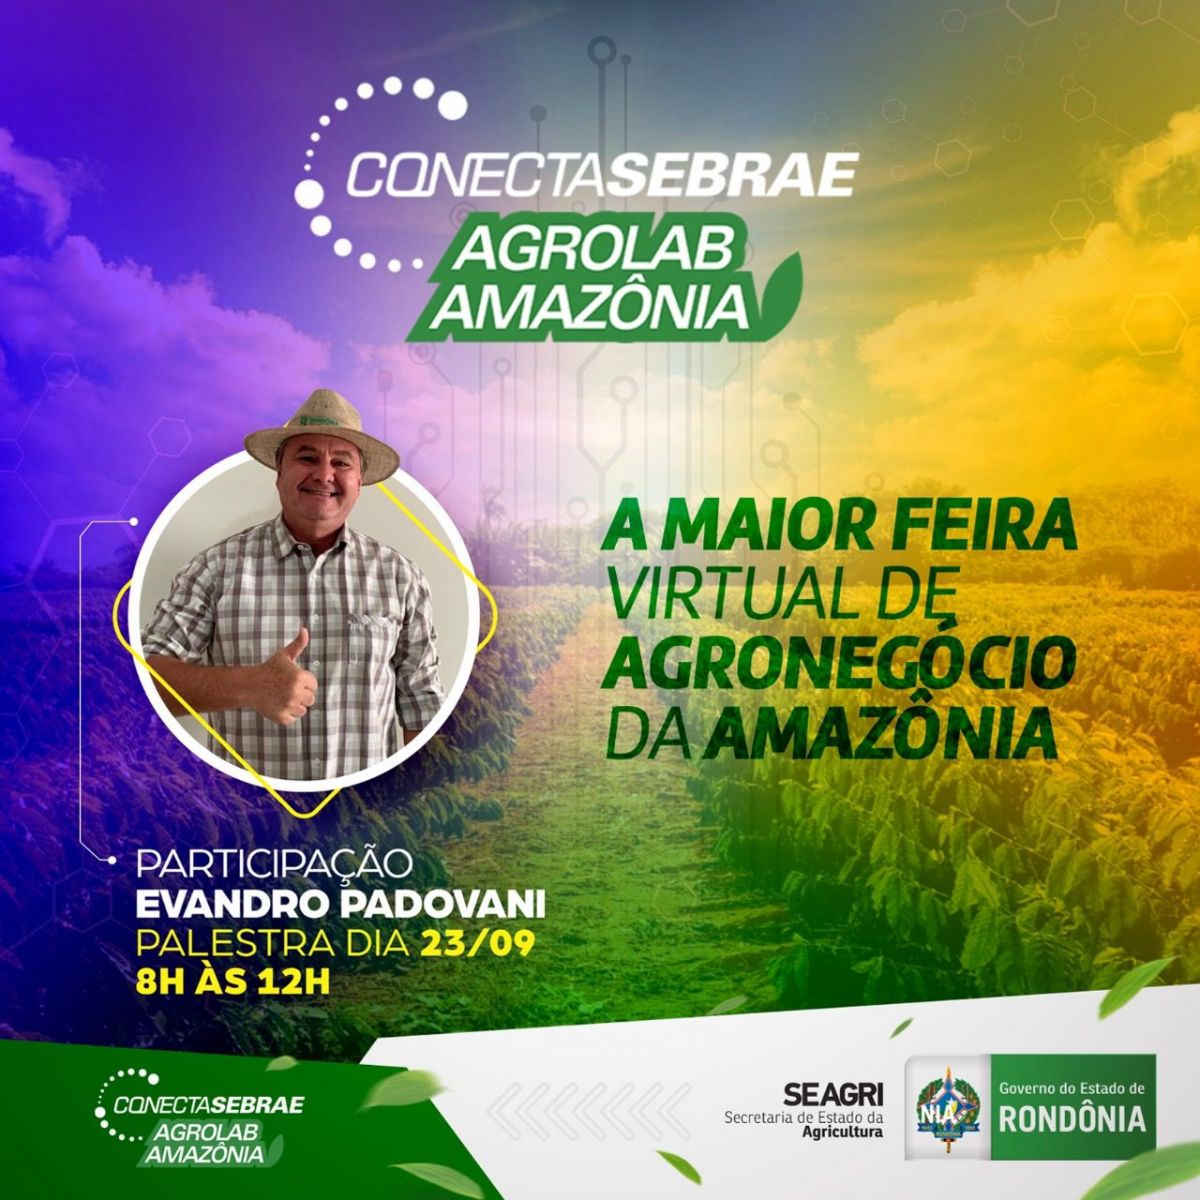 AGROLAB: Rondônia vai participar da maior feira virtual de agronegócio da Amazônia - News Rondônia